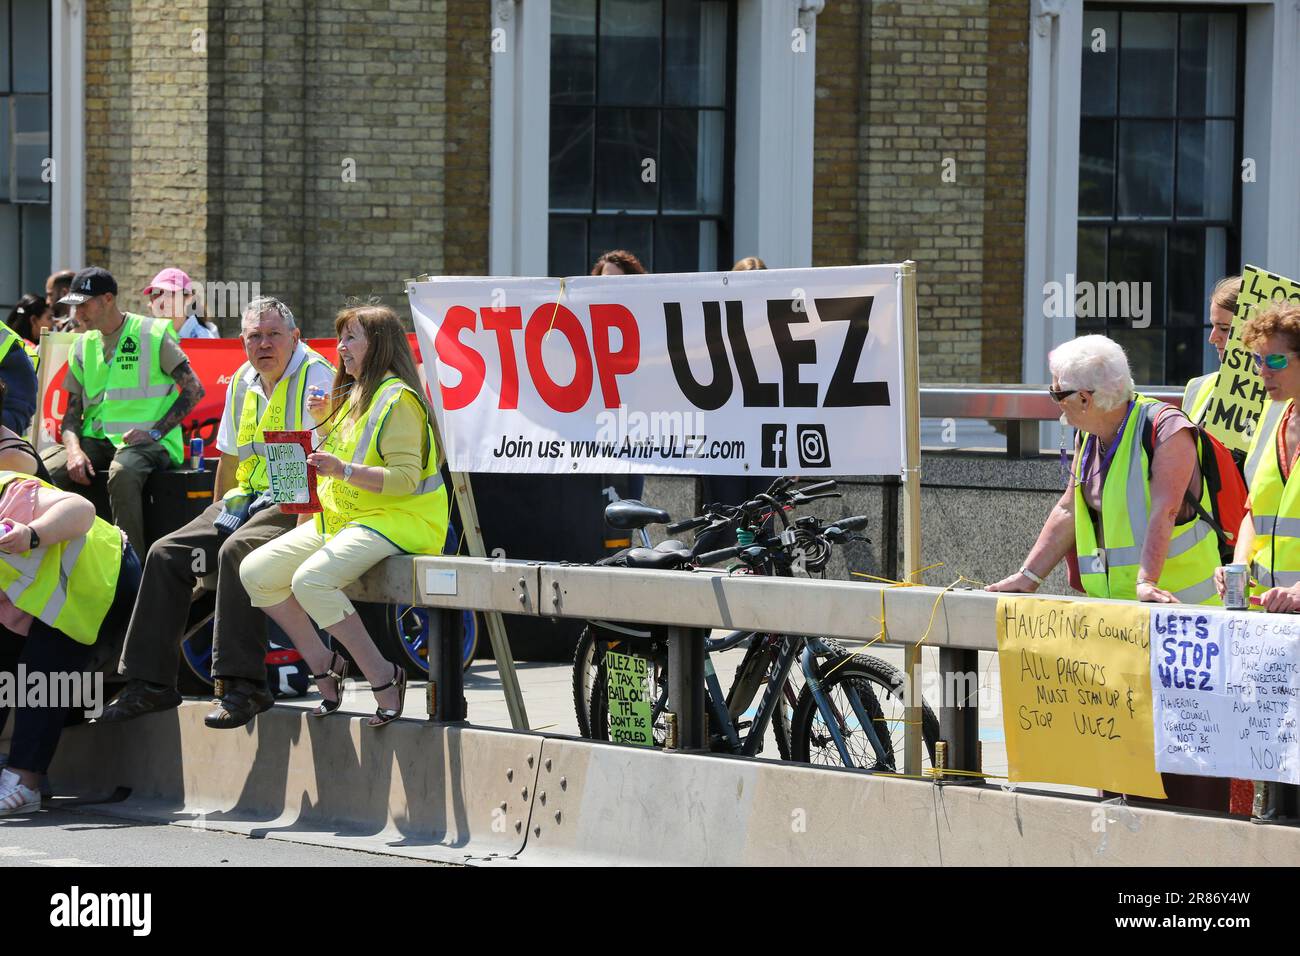 Un panneau « STOP ULEZ » visible sur le London Bridge pendant la manifestation. Les militants protestent contre l'expansion de la zone à très faible émission à travers Londres. A partir du 29 août, les conducteurs de Bexley, Bromley, Harrow et Hillingdon devront payer £12,50 frais quotidiens si leurs véhicules ne répondent pas aux normes d'émissions requises.les militants protestent contre l'expansion de la zone à très faible émission à l'extérieur de Londres. À partir du 29 août, les conducteurs de Bexley, Bromley, Harrow et Hillingdon devront payer des frais quotidiens de £12,50 si leurs véhicules ne répondent pas aux normes d'émissions requises. (Photo de Steve Taylor Banque D'Images